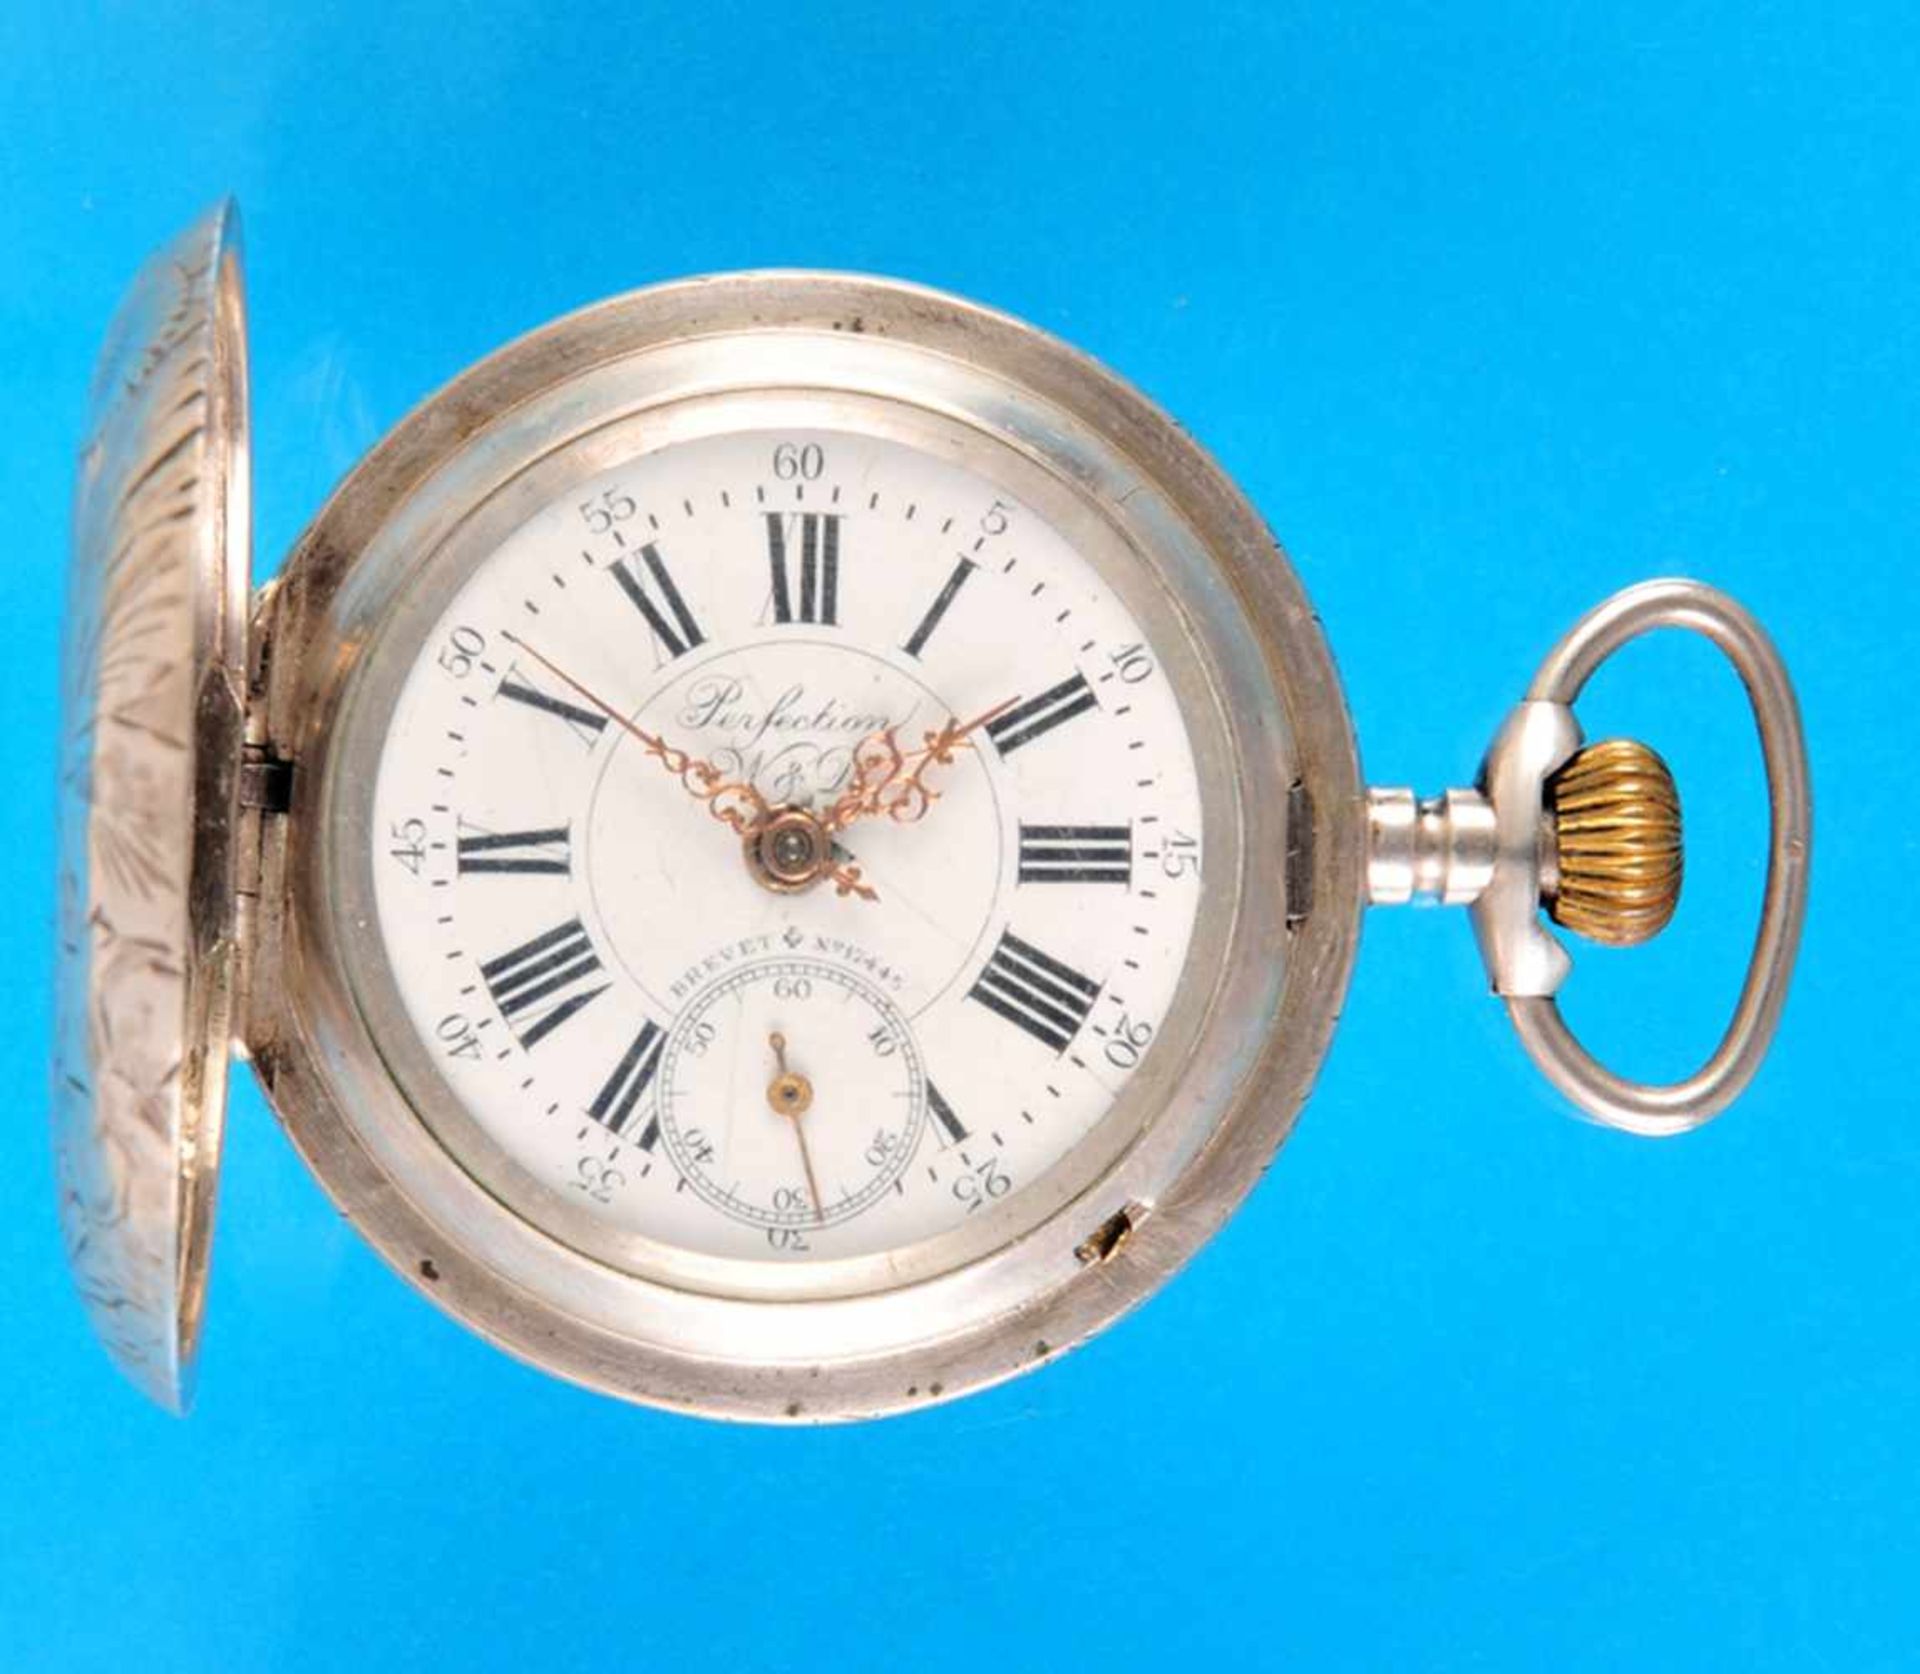 Silver pocket watch with spring cover, La perfectionSilbertschenuhr mit Sprungdeckel, La Perfection,